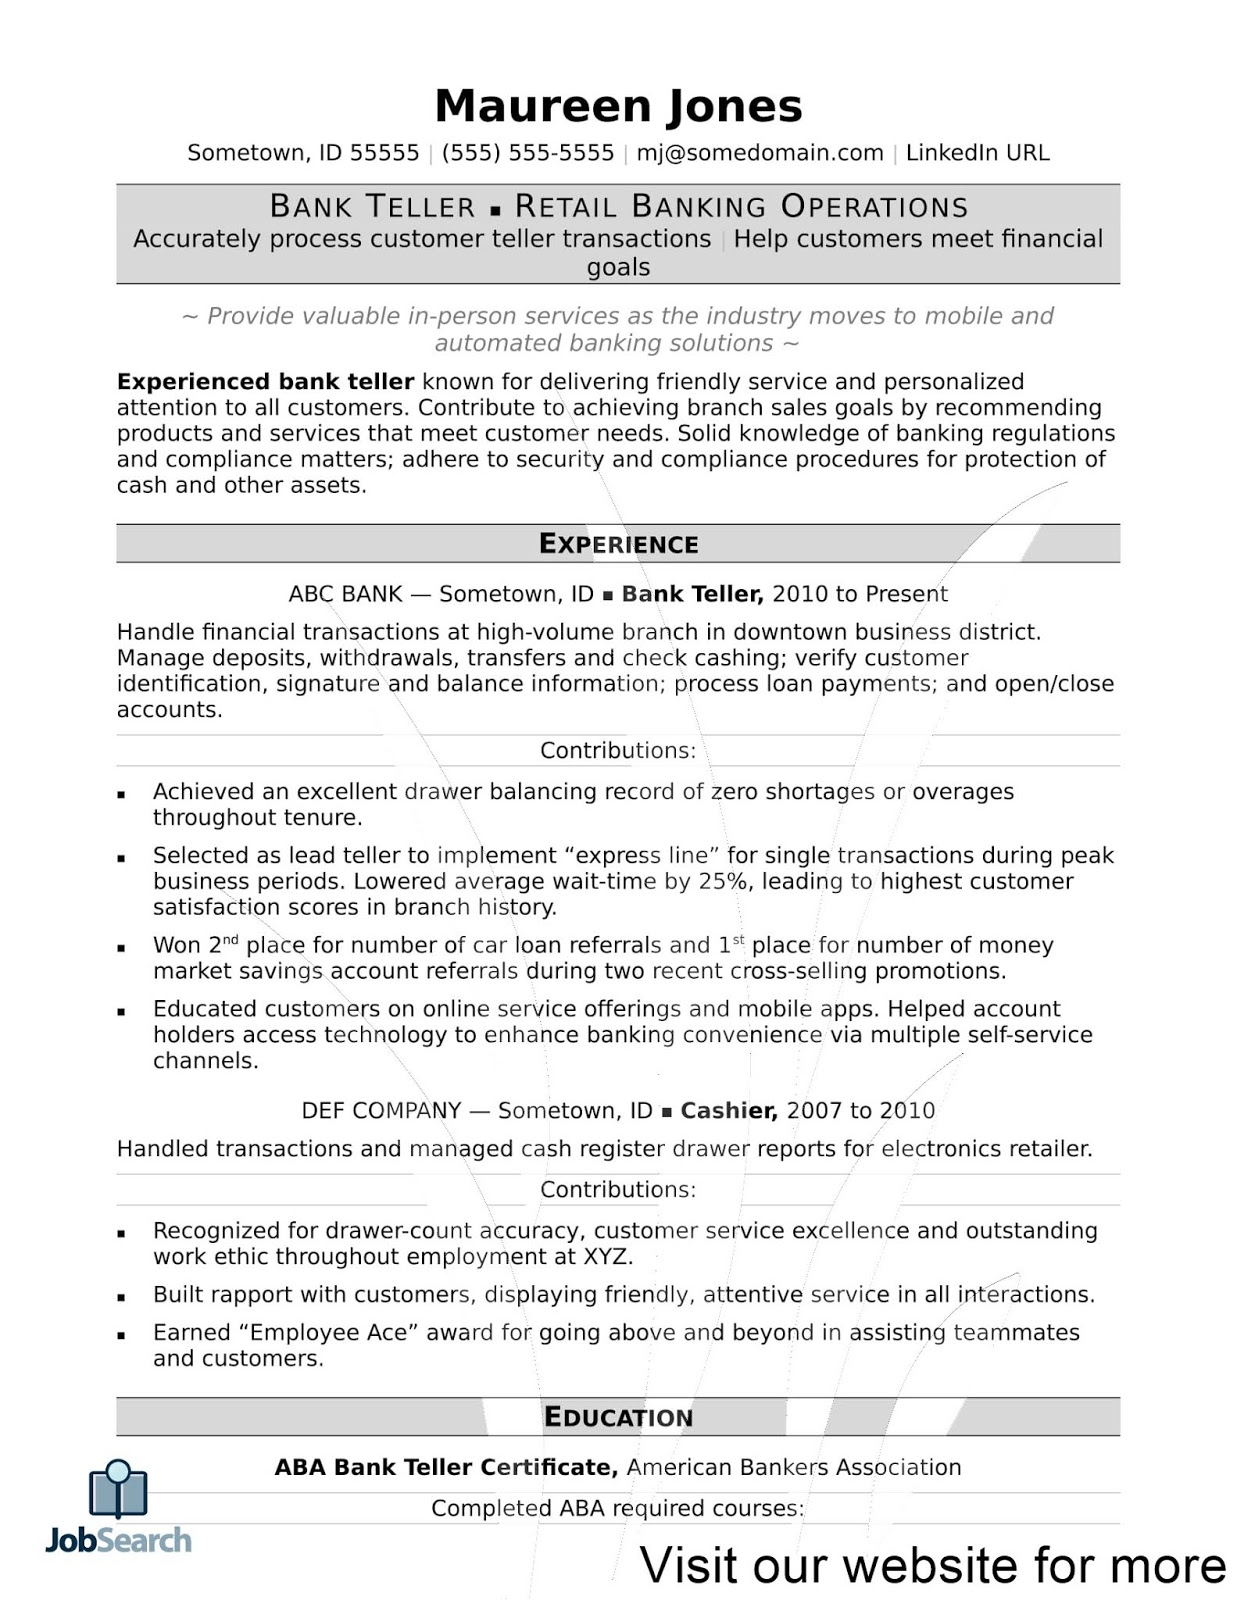 bank resume template bank resume template download Bank Resume Template 2020 bank resume template for freshers bank teller resume template